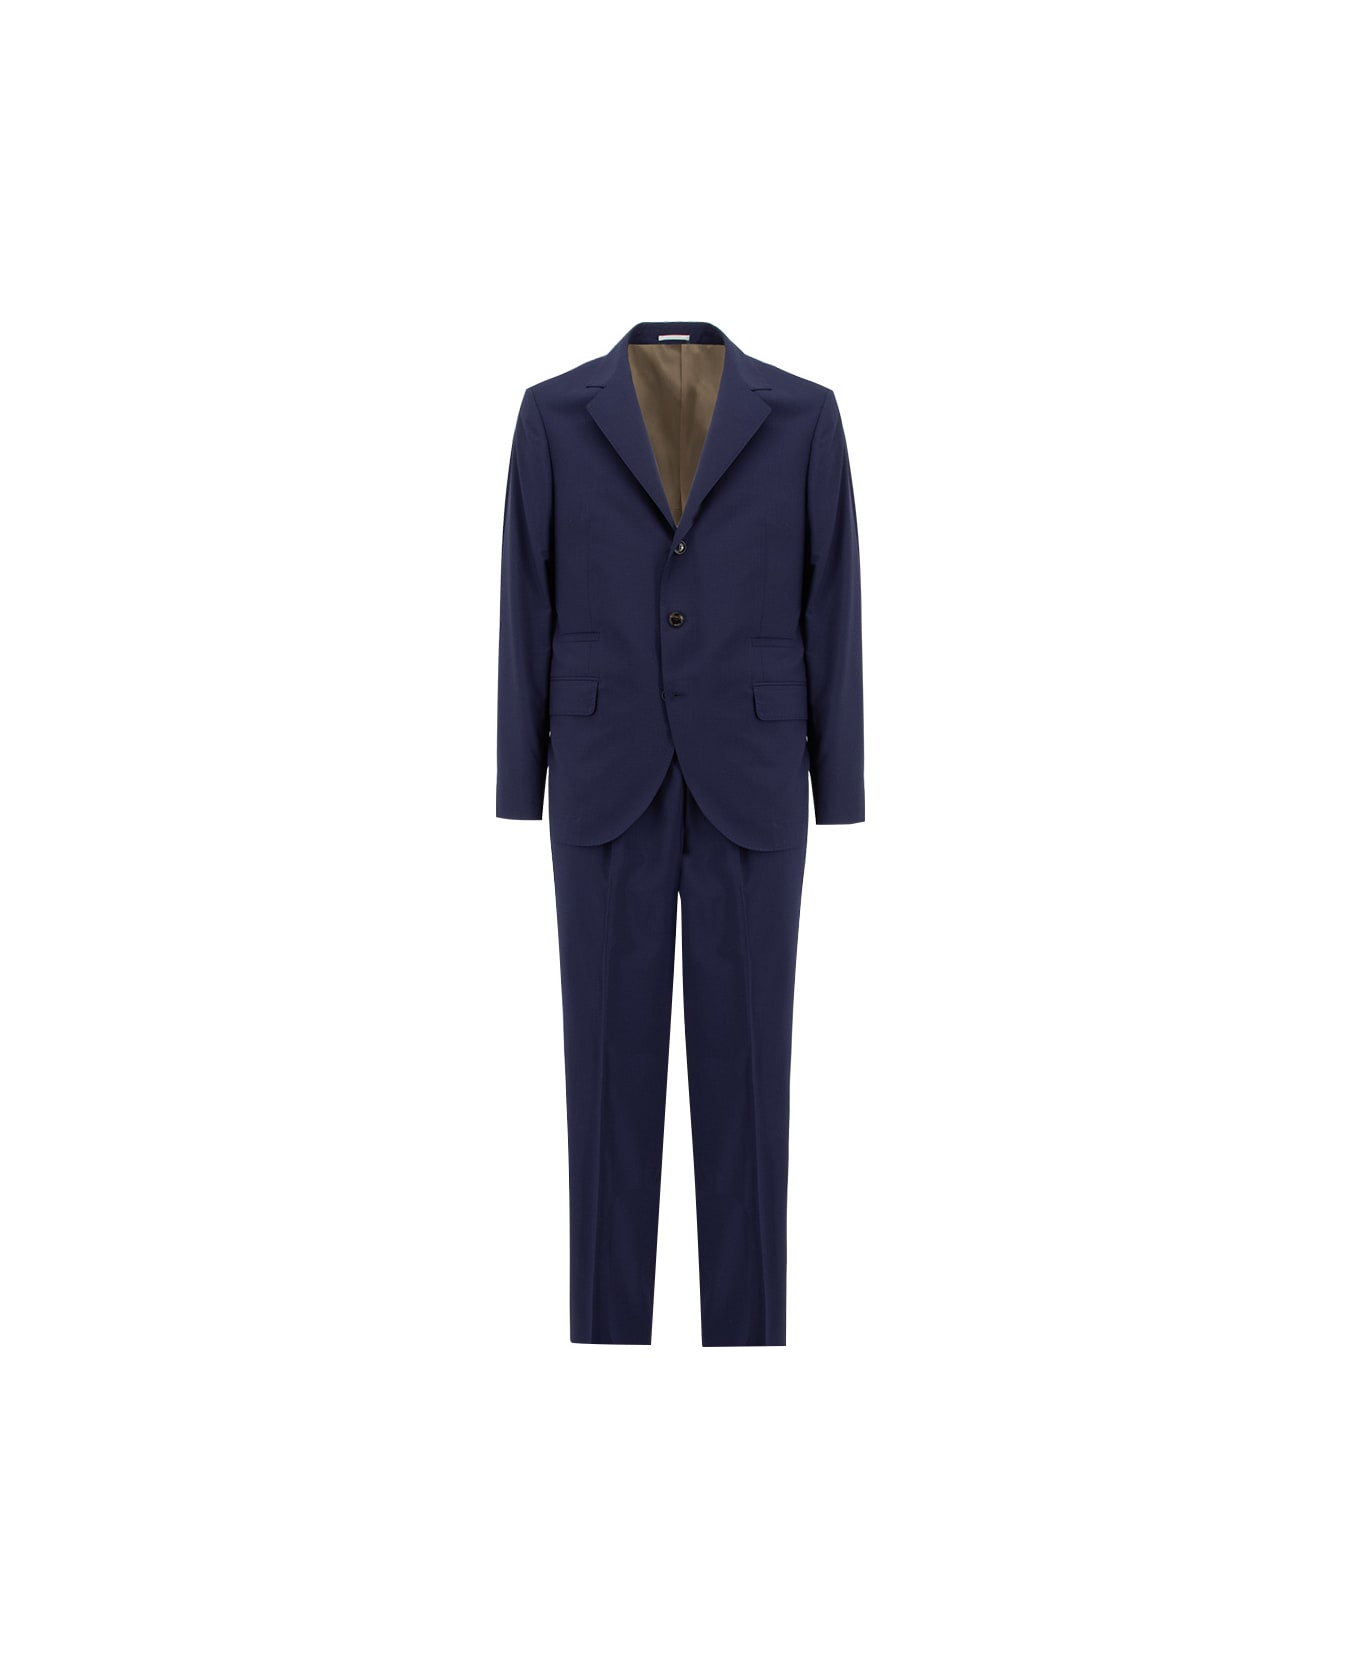 Brunello Cucinelli Suit - BLU COLORATO